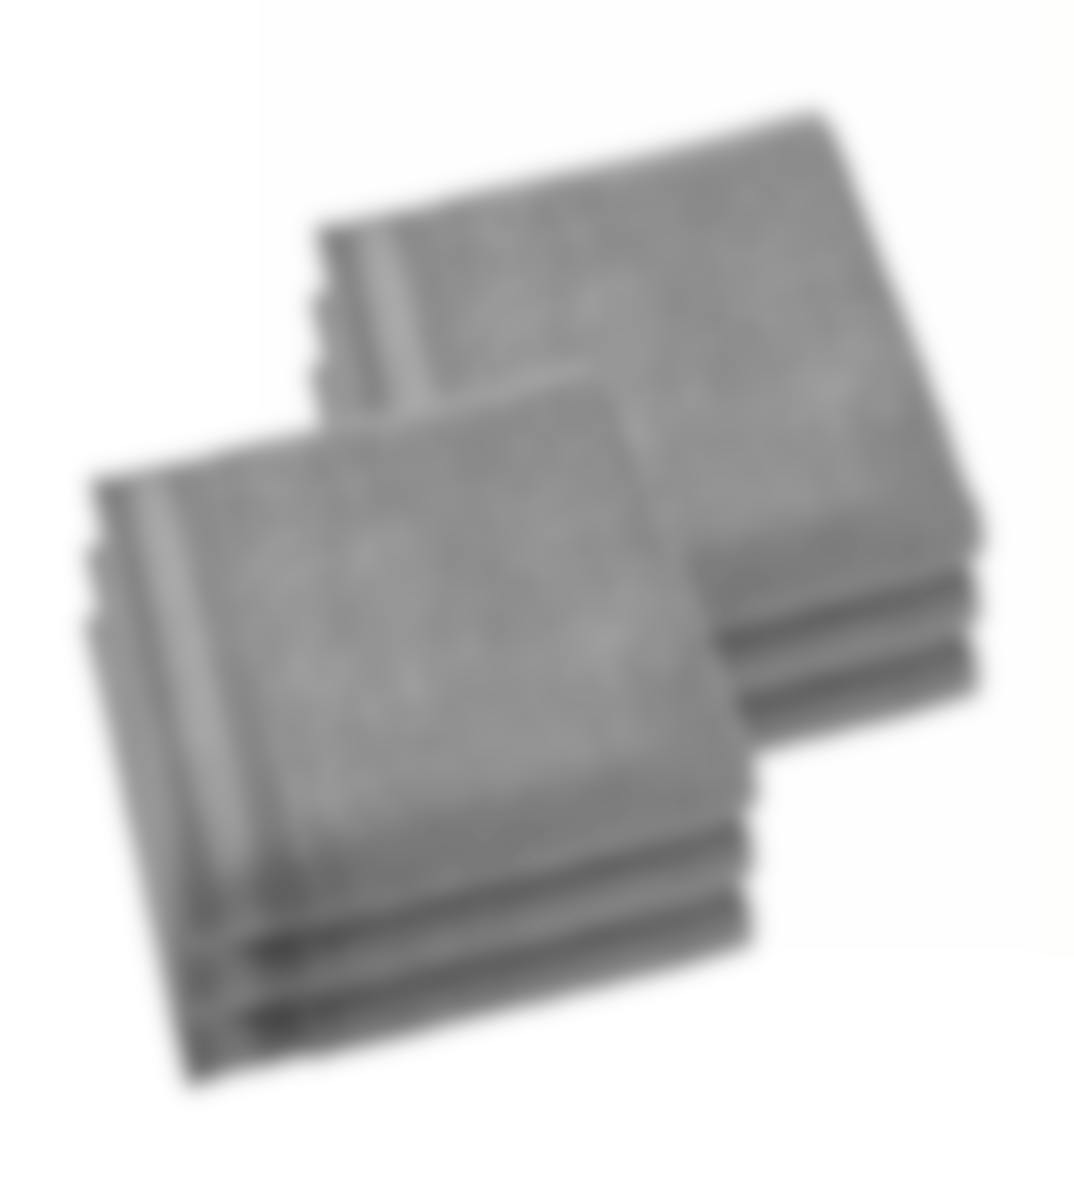 De Witte Lietaer handdoek Contessa steel grey 50 x 100 cm set van 6